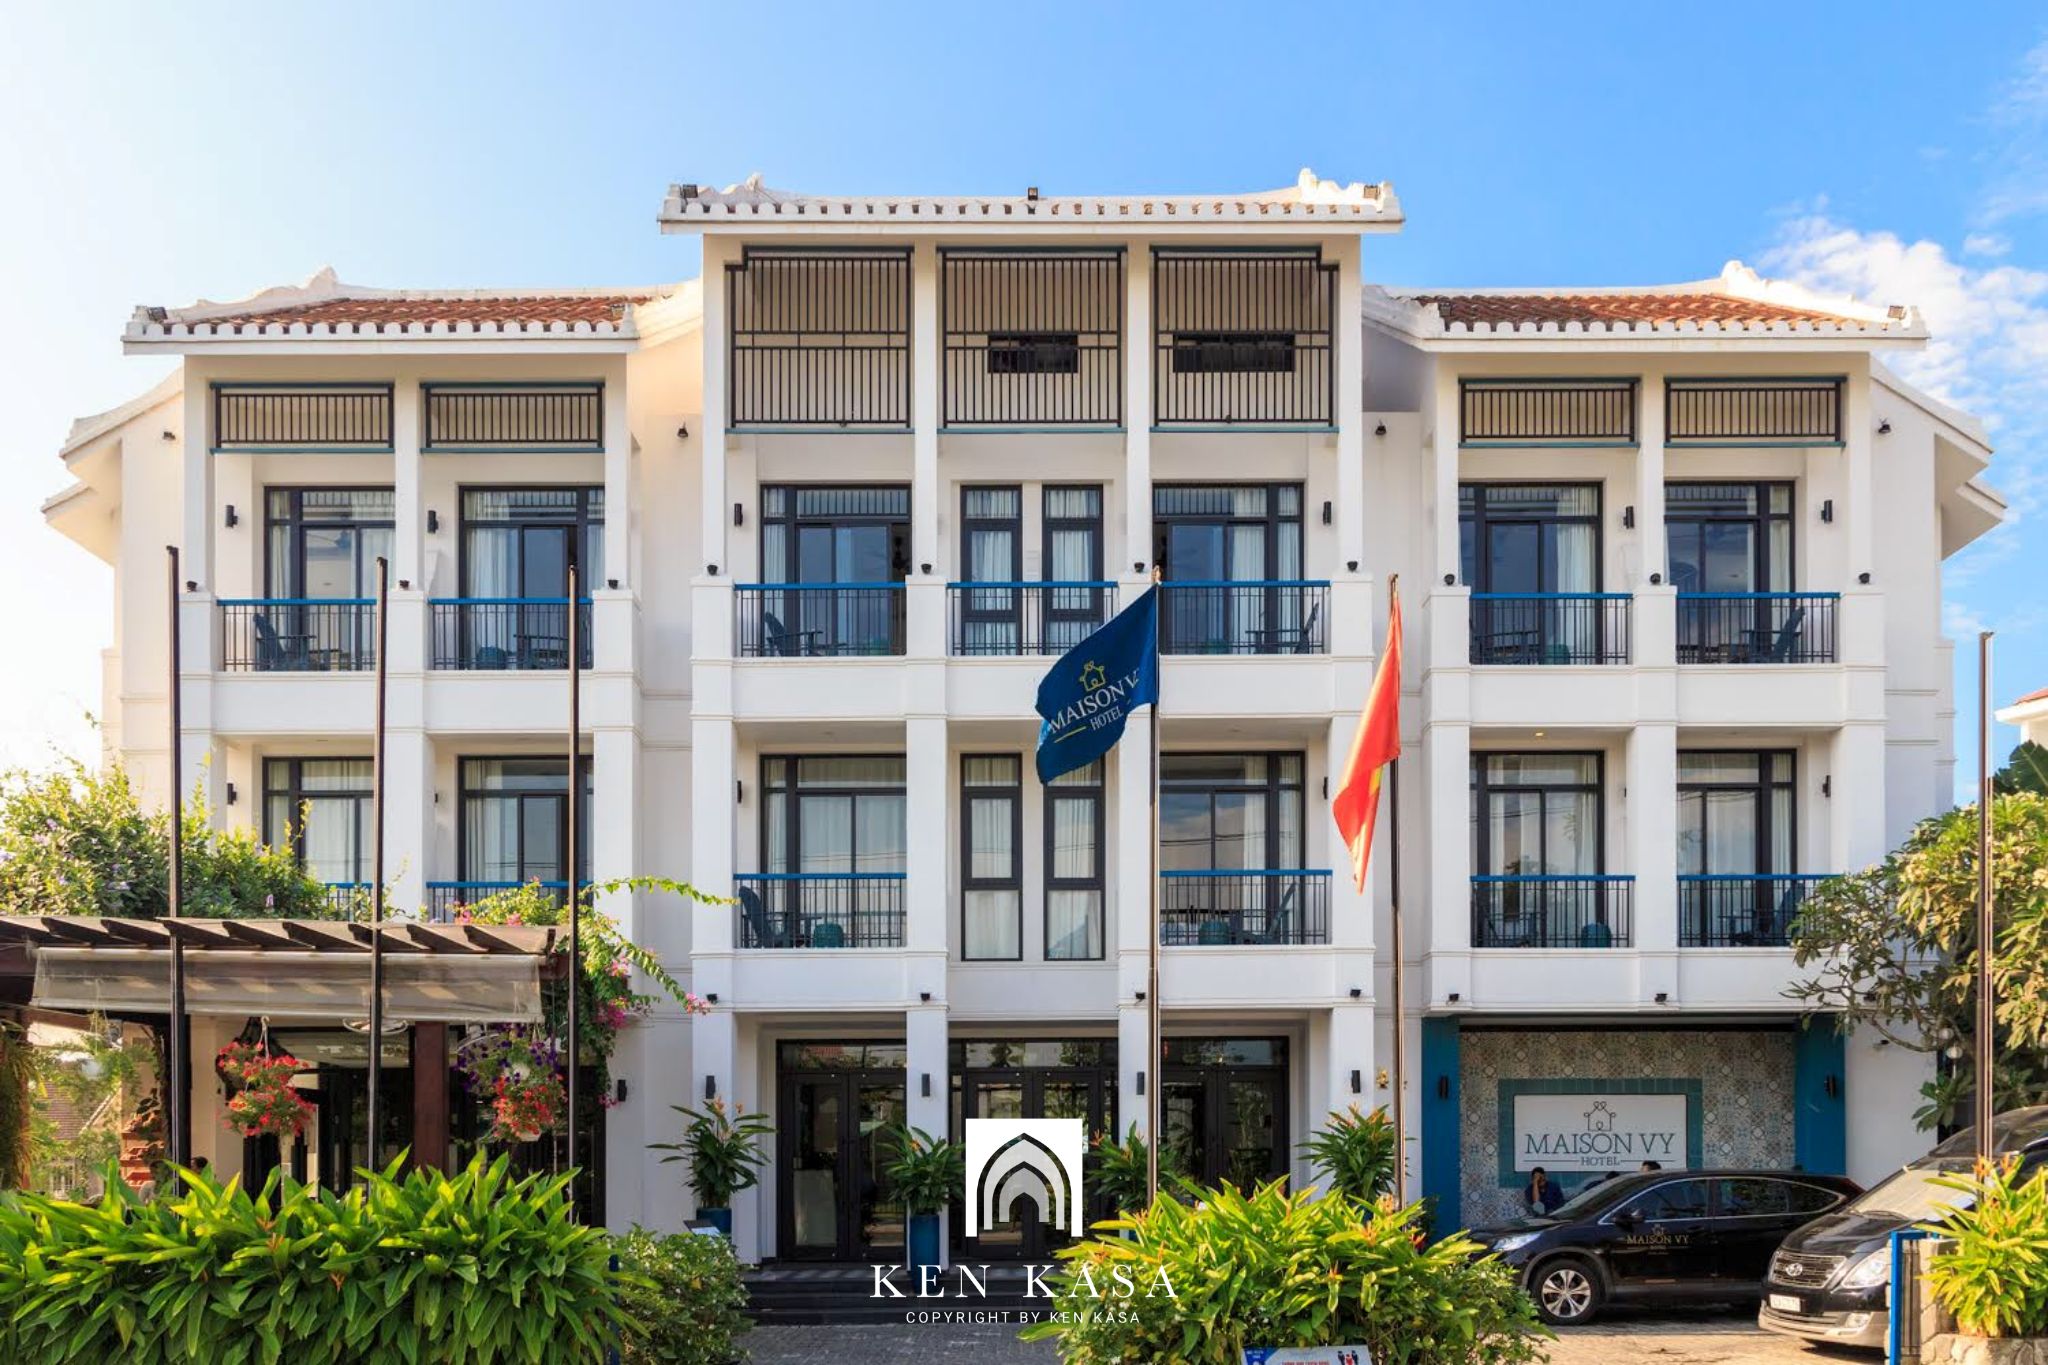 Review Maison Vy Hotel Hội An - Cung điện mang nét đẹp Á Đông trong thiết kế